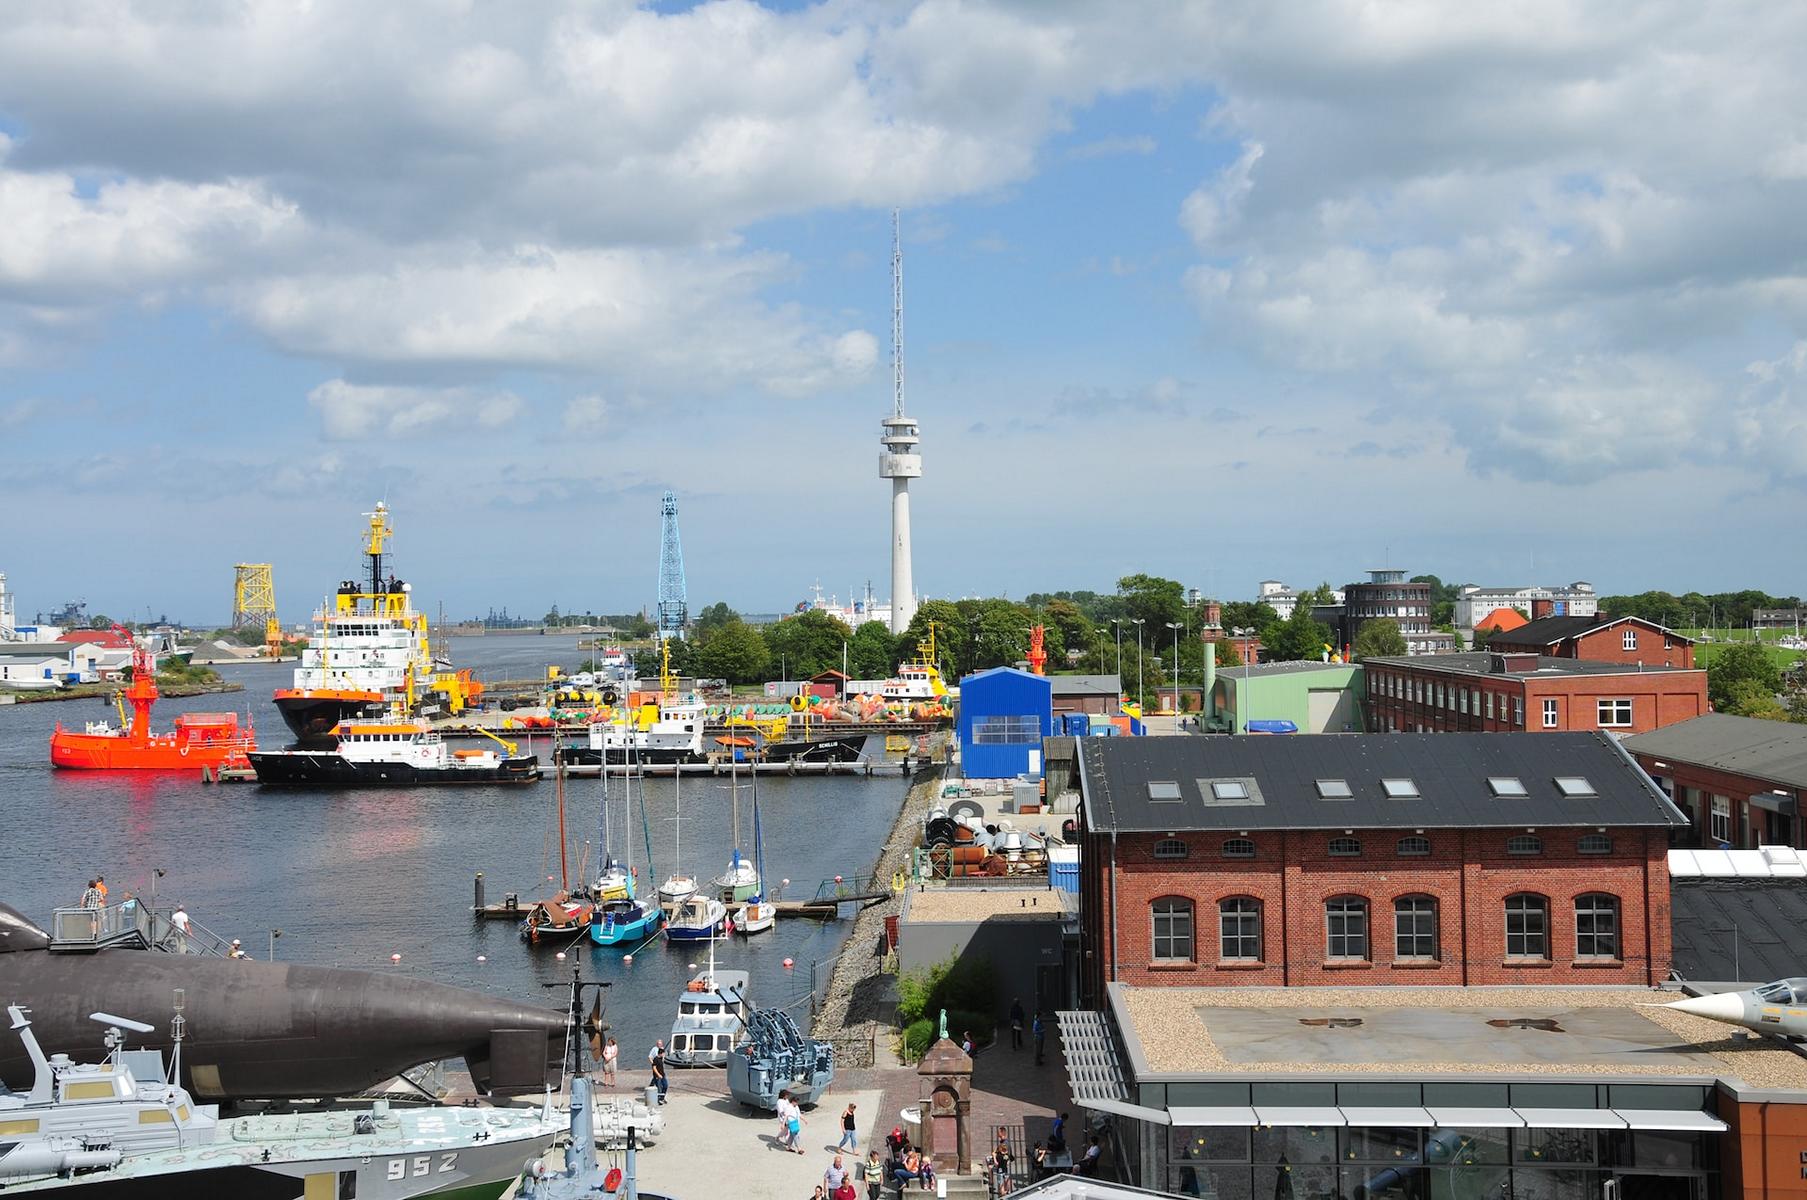 Hafen in Wilhelmshaven mit Gebäuden, Schiffen und Fernsehturm.